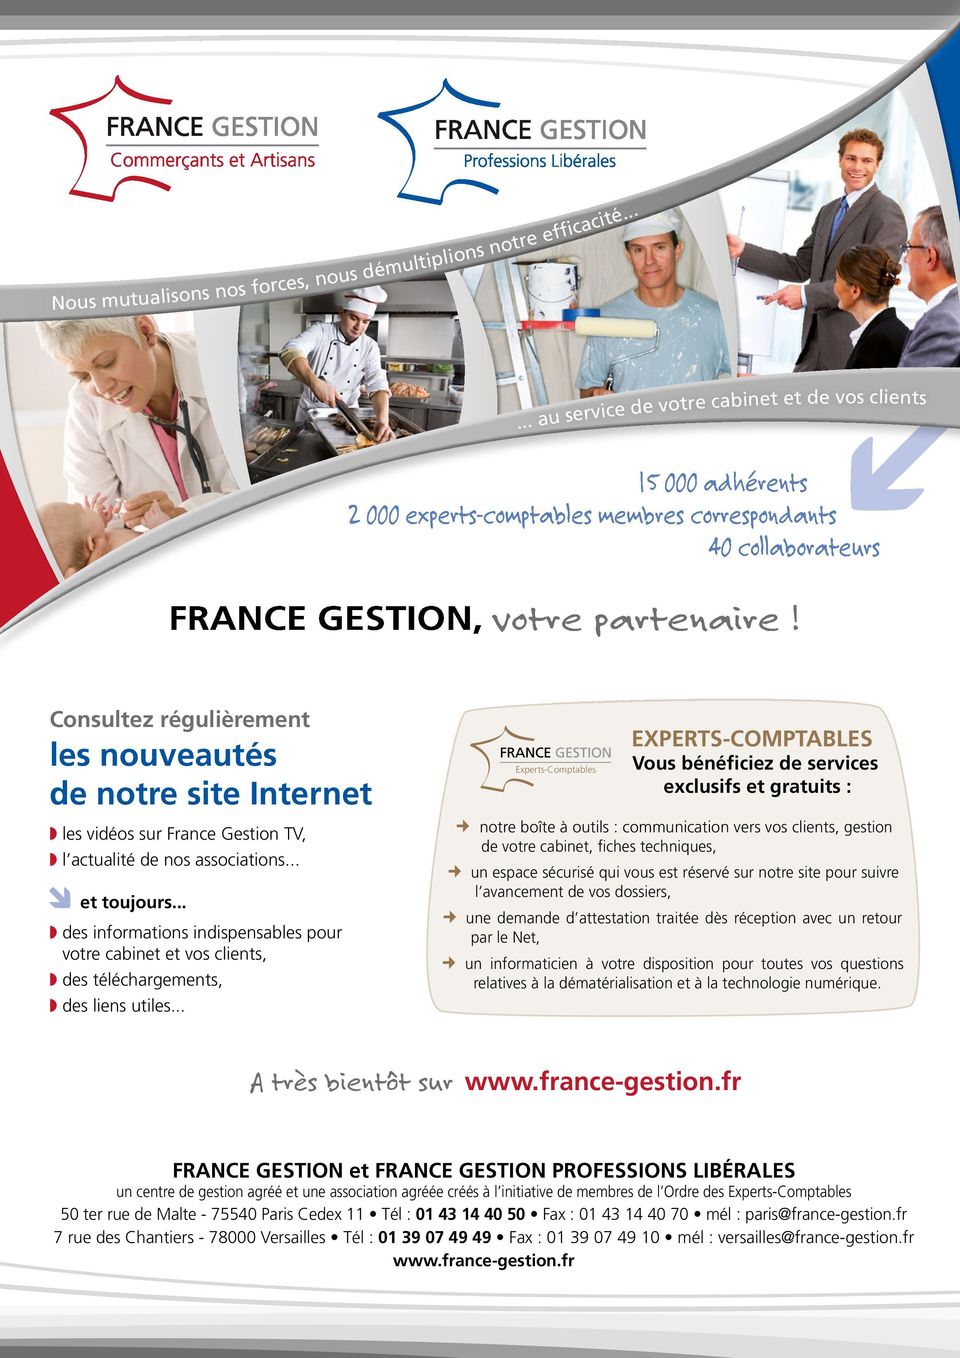 Consultez régulièrement les nouveautés de notre site Internet les vidéos sur France Gestion TV, l actualité de nos associations... et toujours.